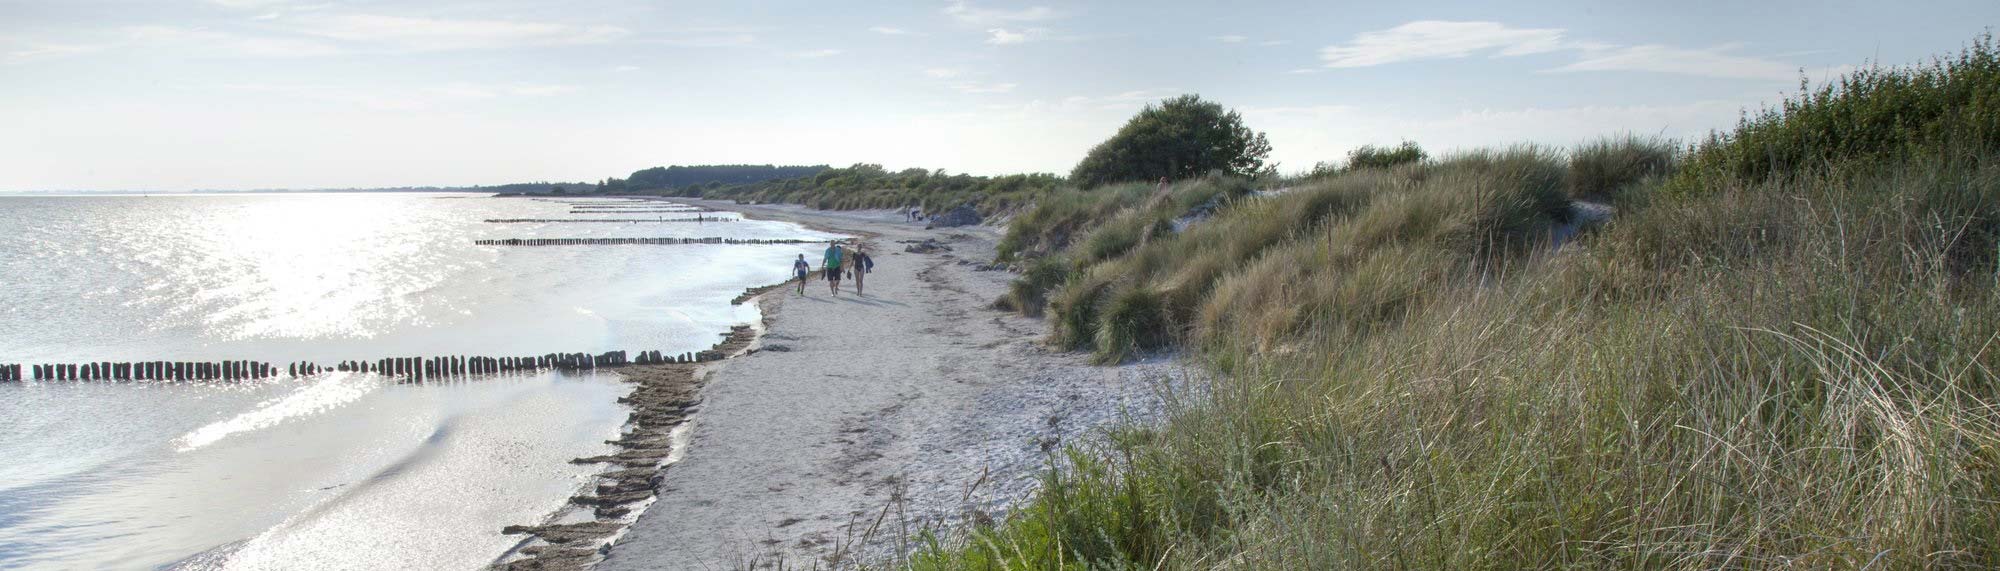 Menschen laufen barfuß durch einen Sandstrand an der Ostsee in Dänemark